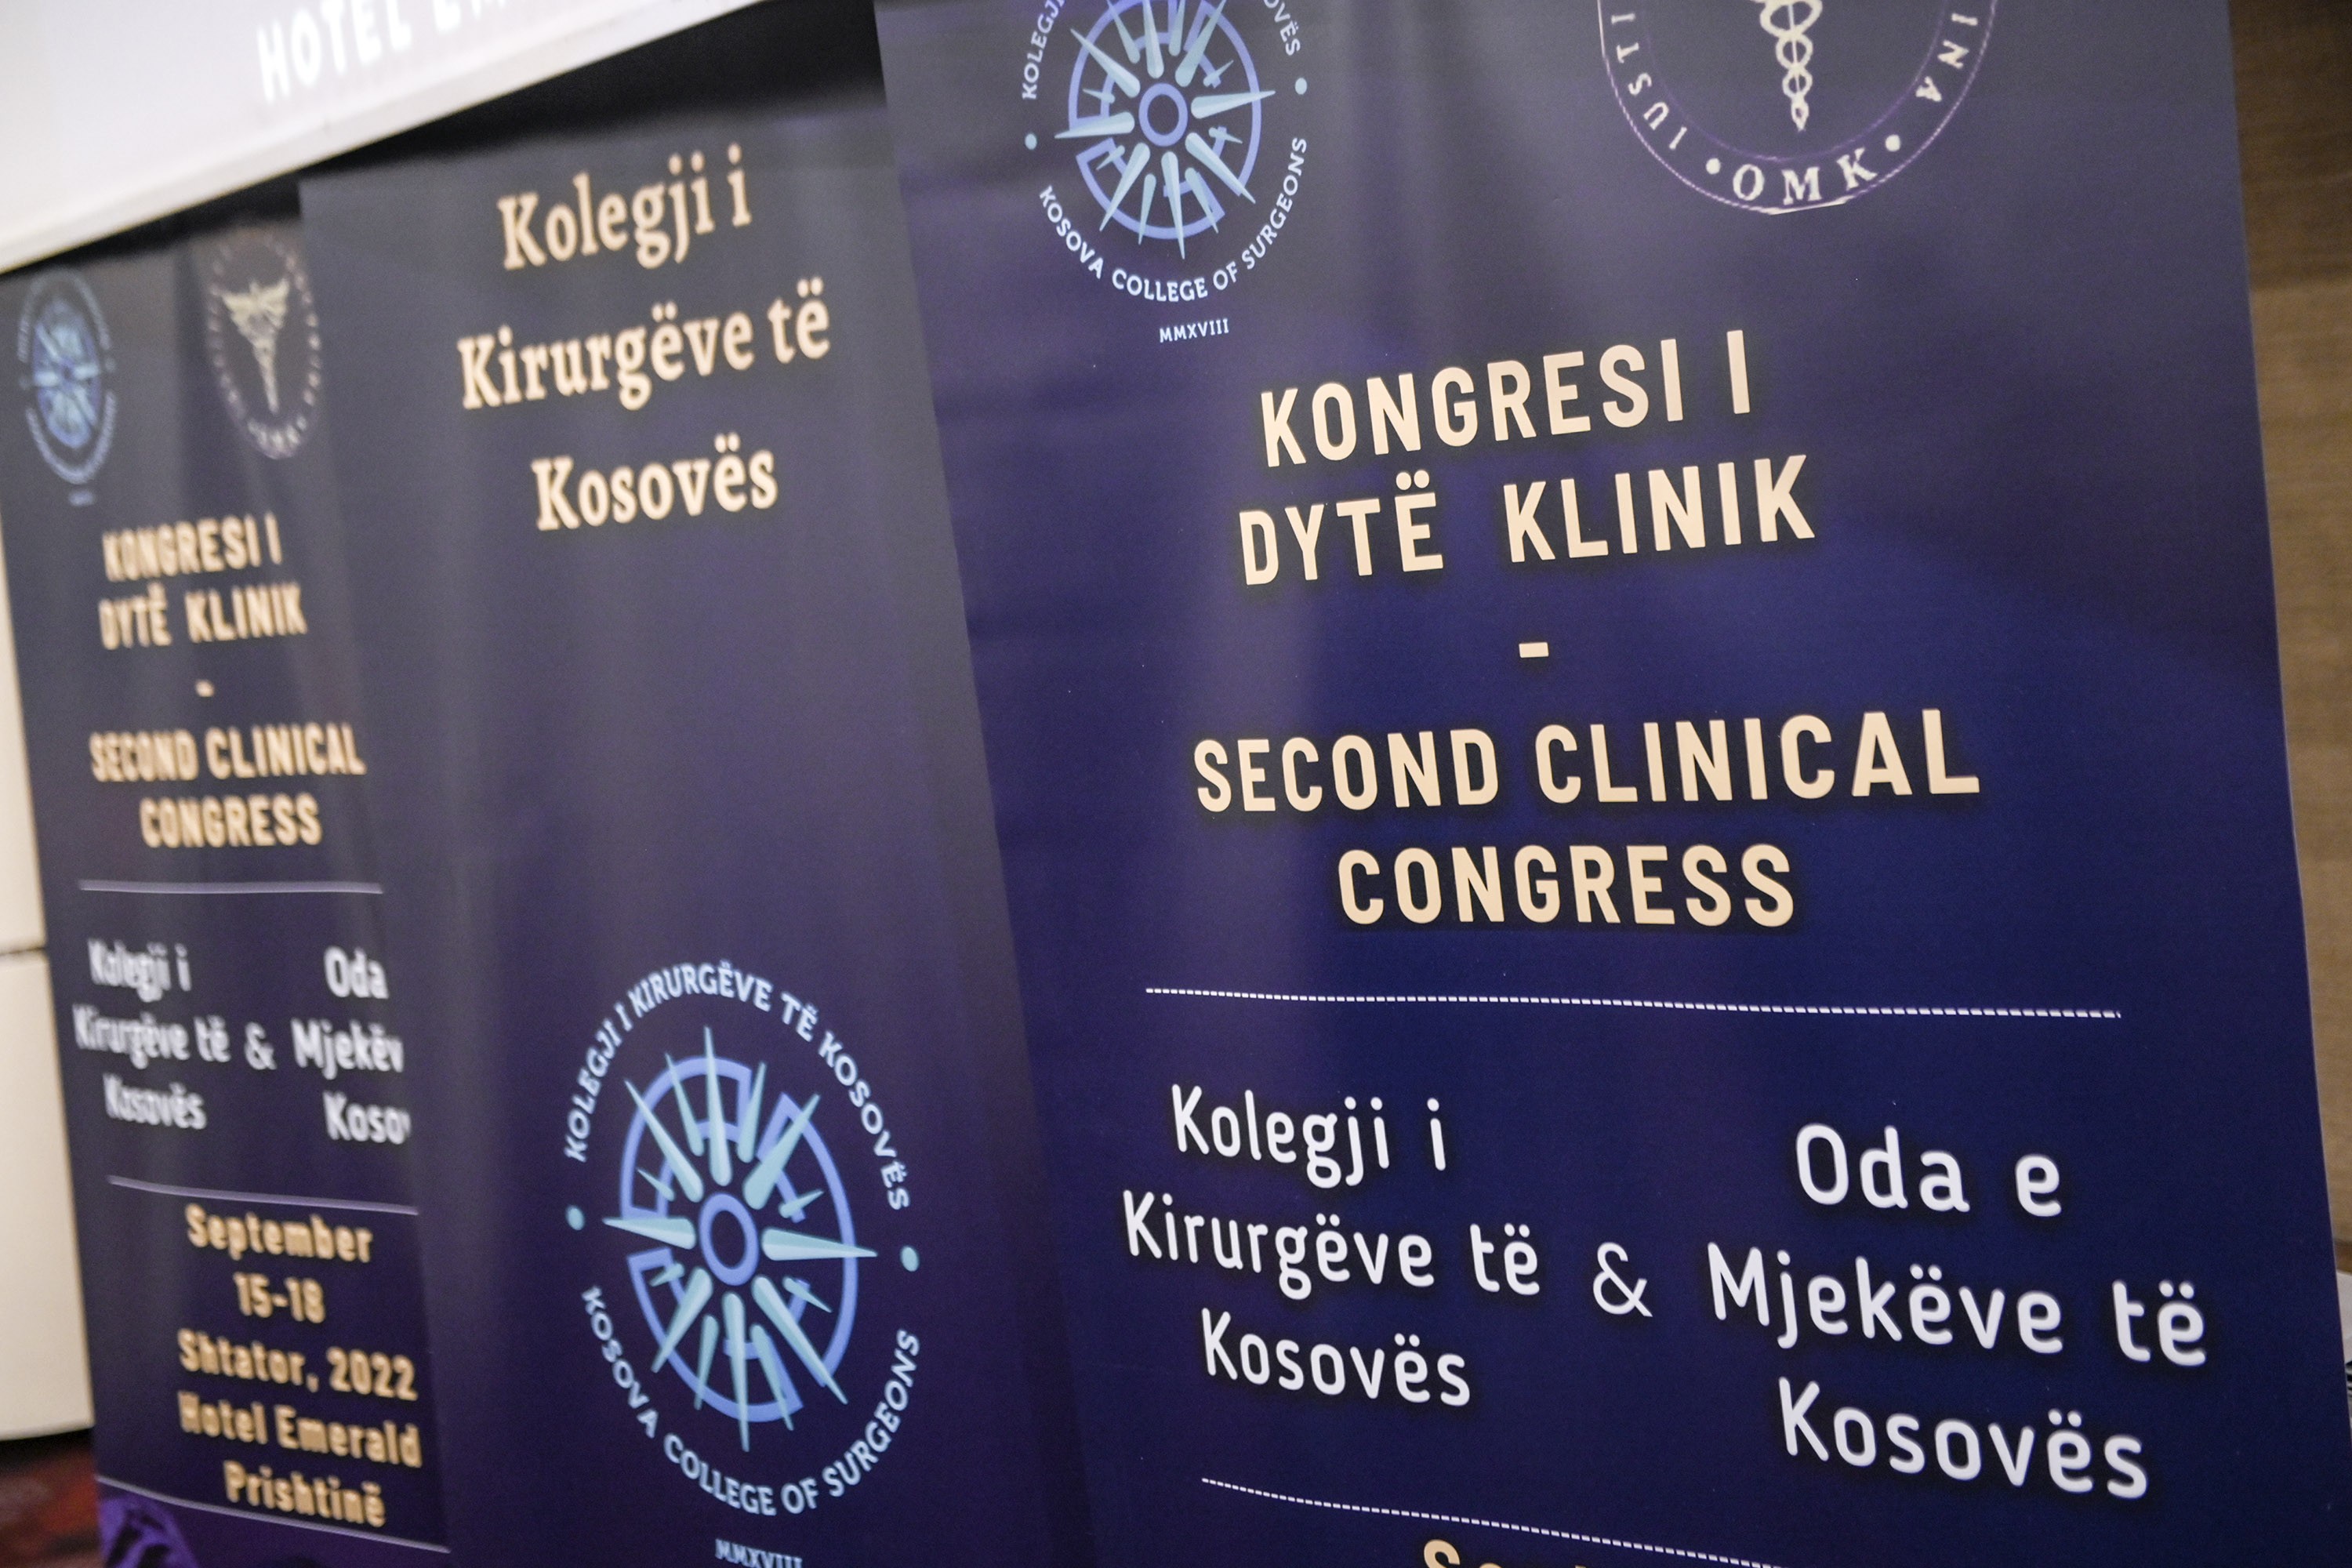 Hapet kongresi i dytë klinik i Kolegjit të Kirurgëve të Kosovës